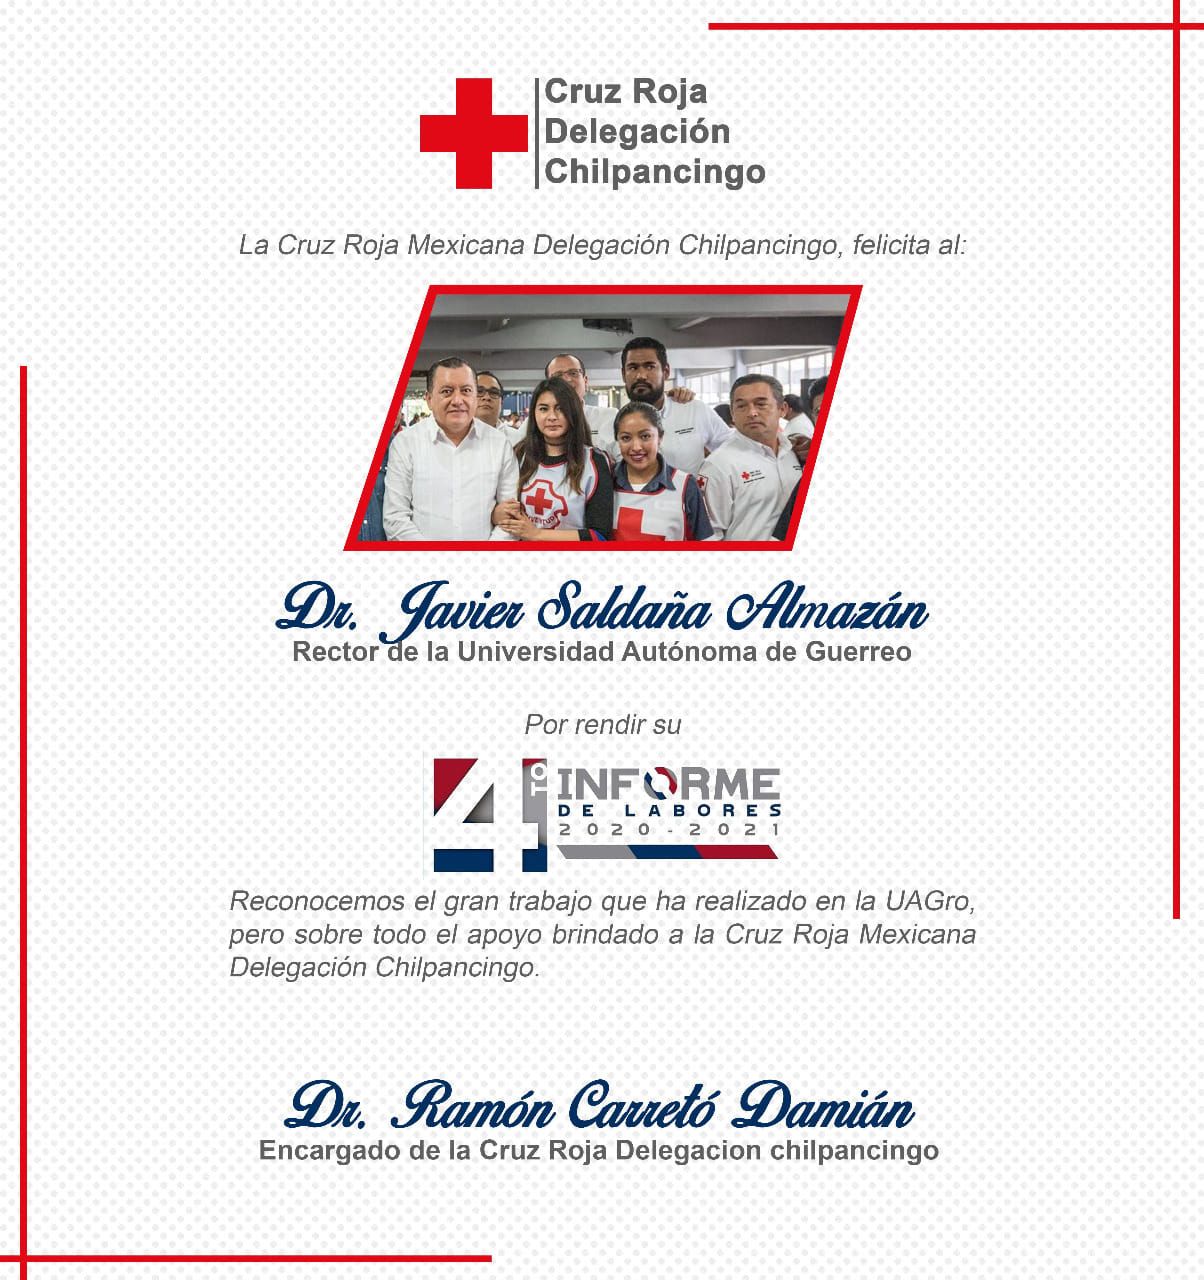 Agradece Javier Saldaña a la Cruz Roja Chilpancingo por sus palabras de felicitación